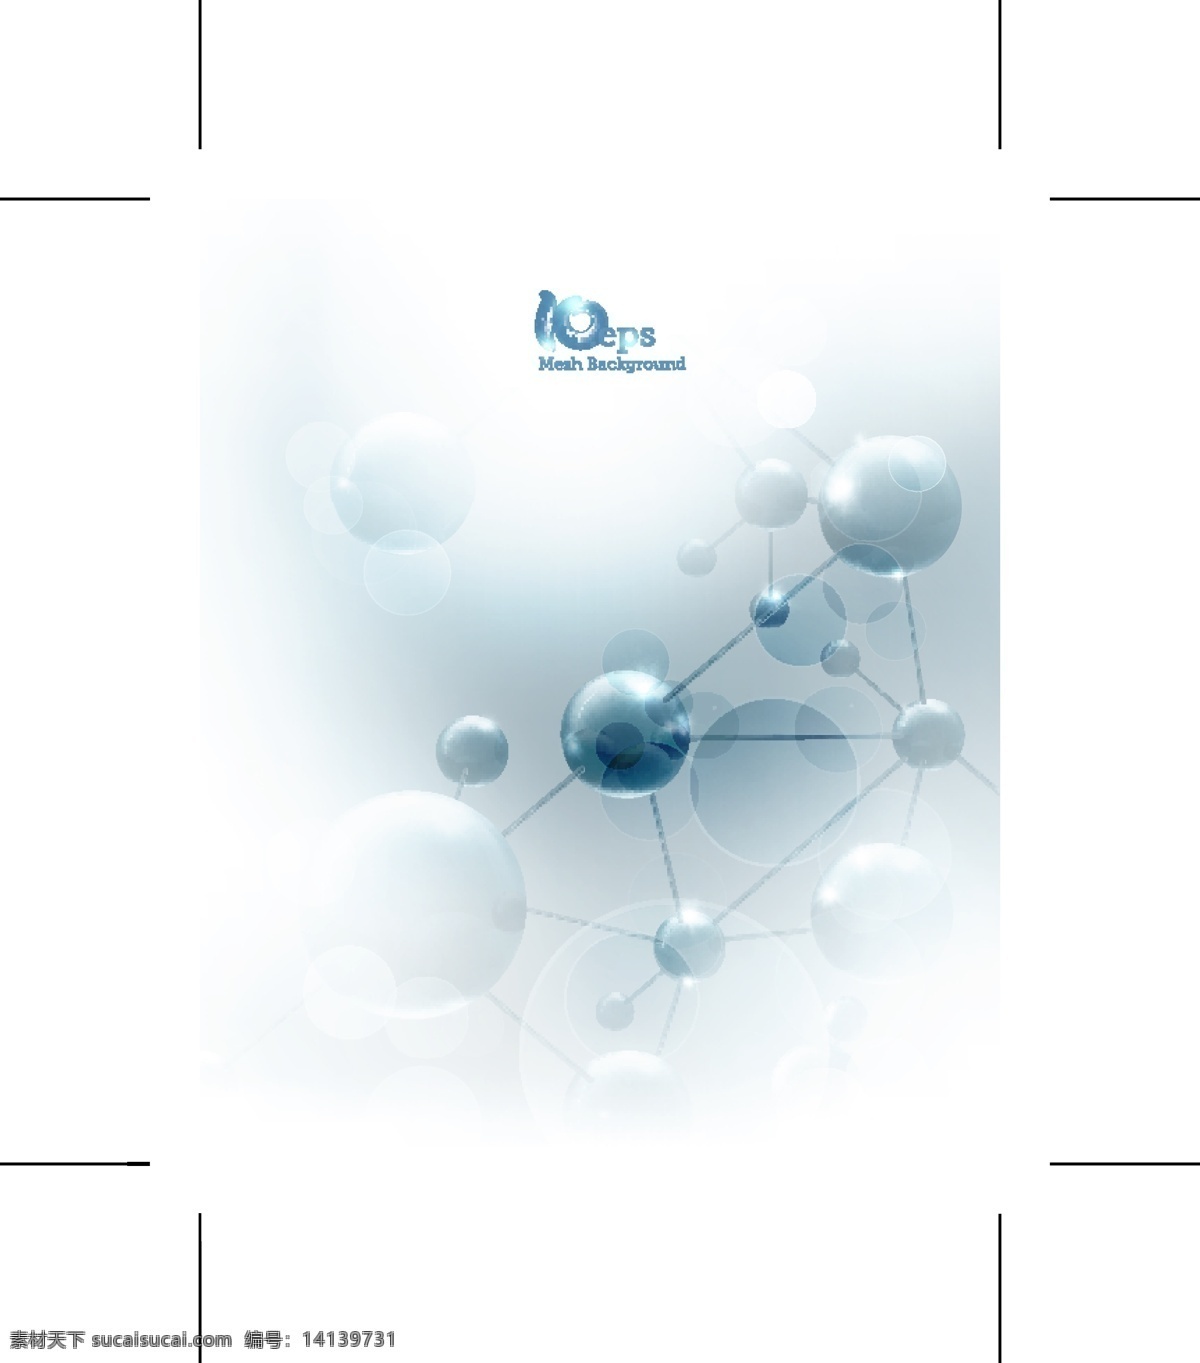 分子结构图 化学分子 化学 分子 结构 医药 符号 医学 生物 细胞 分子模型 分子结构 化学符号 组织 分子表 蓝色 文化艺术 矢量